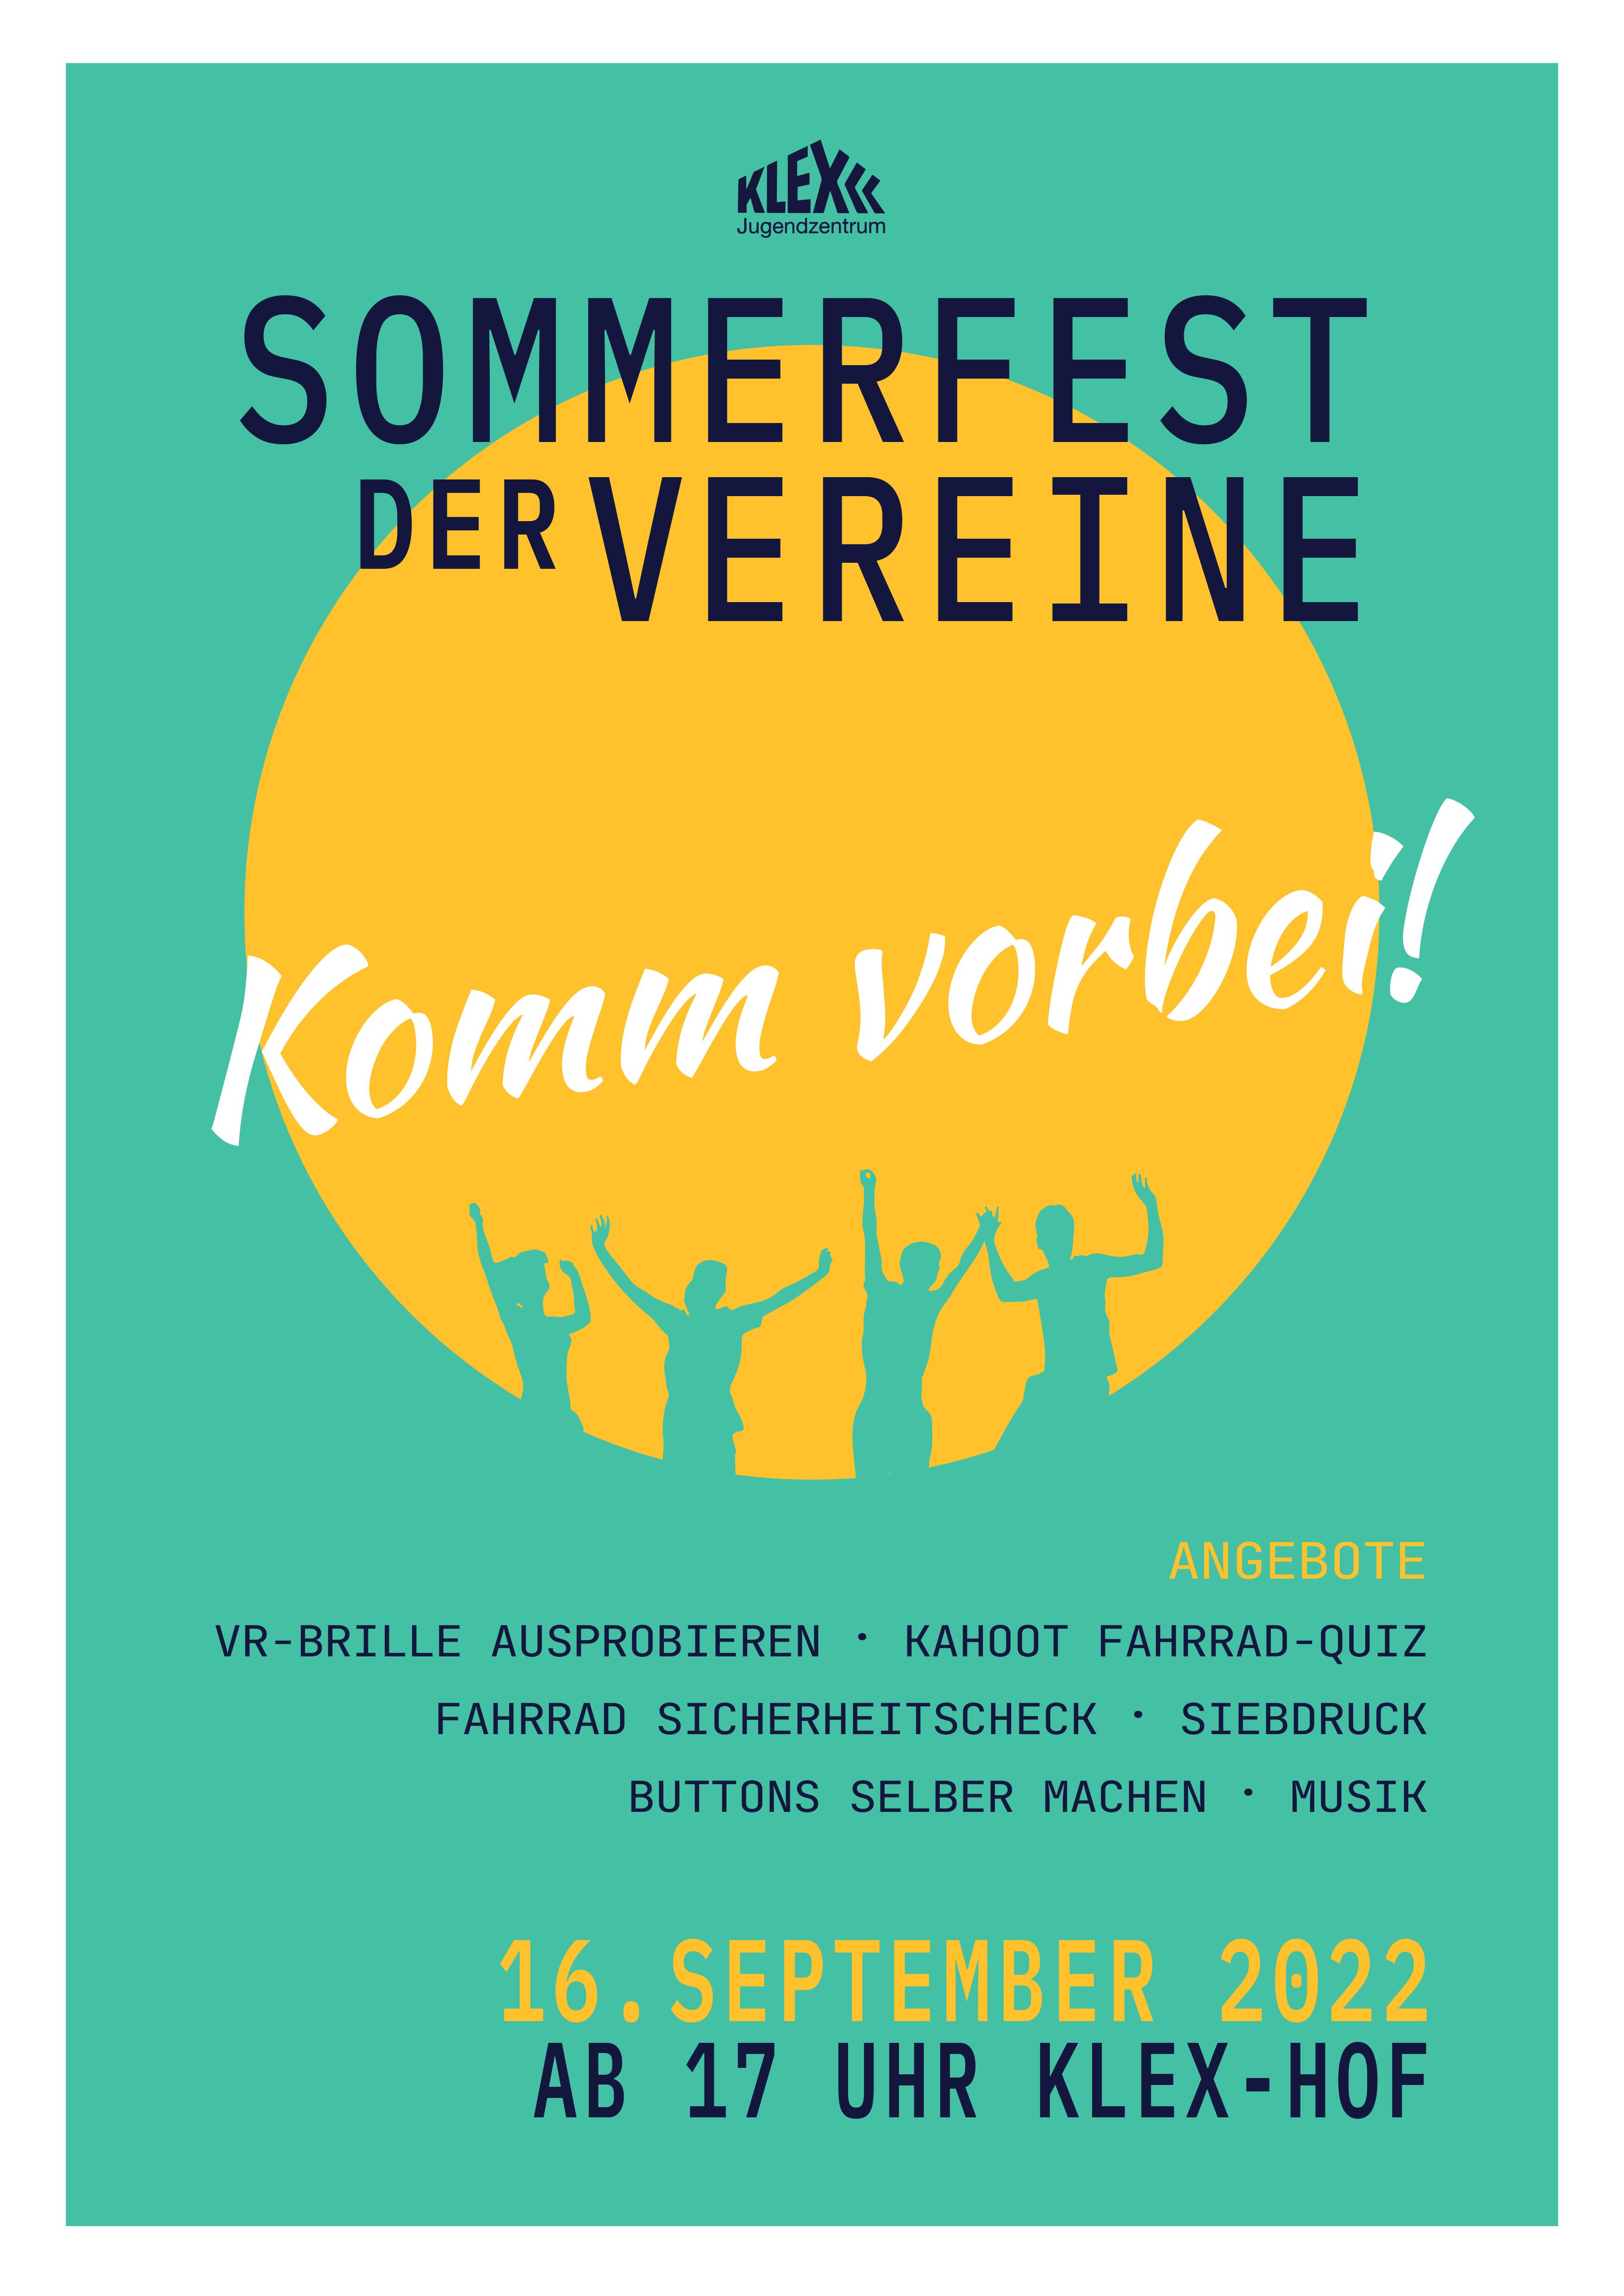 Sommerfest klerx 2022